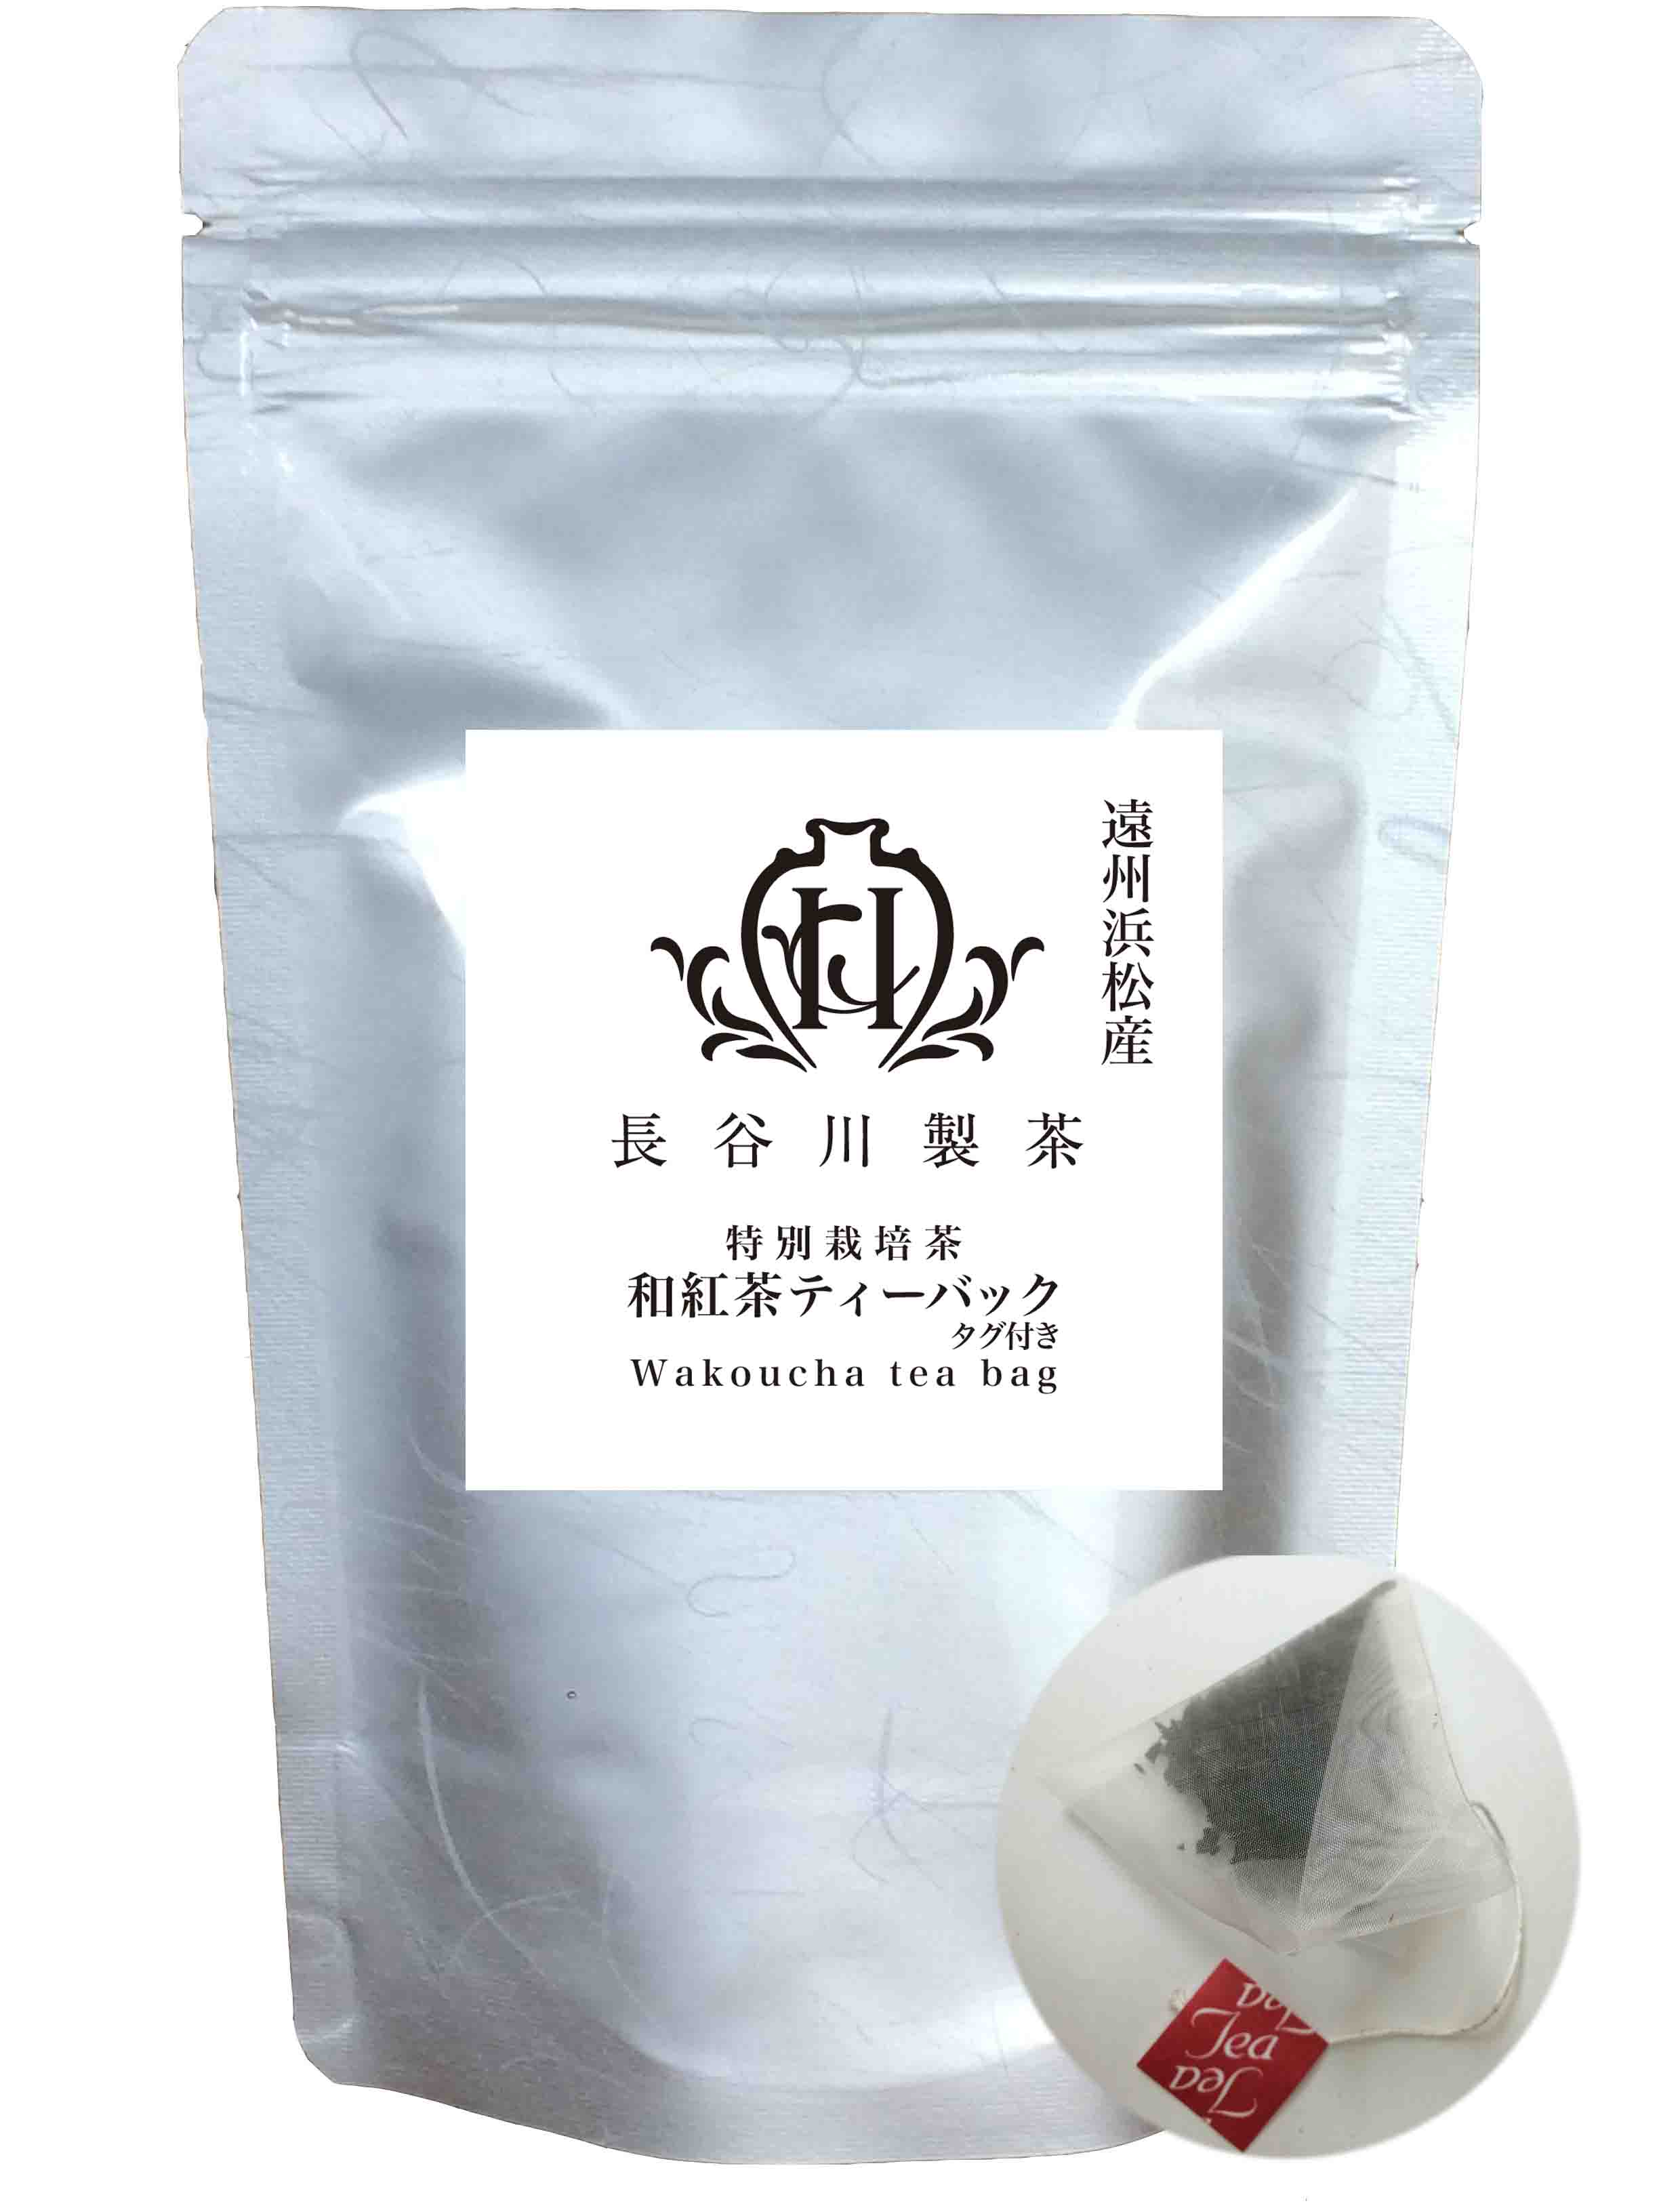 Enshu Hamamatsu Japanese black tea tea bags